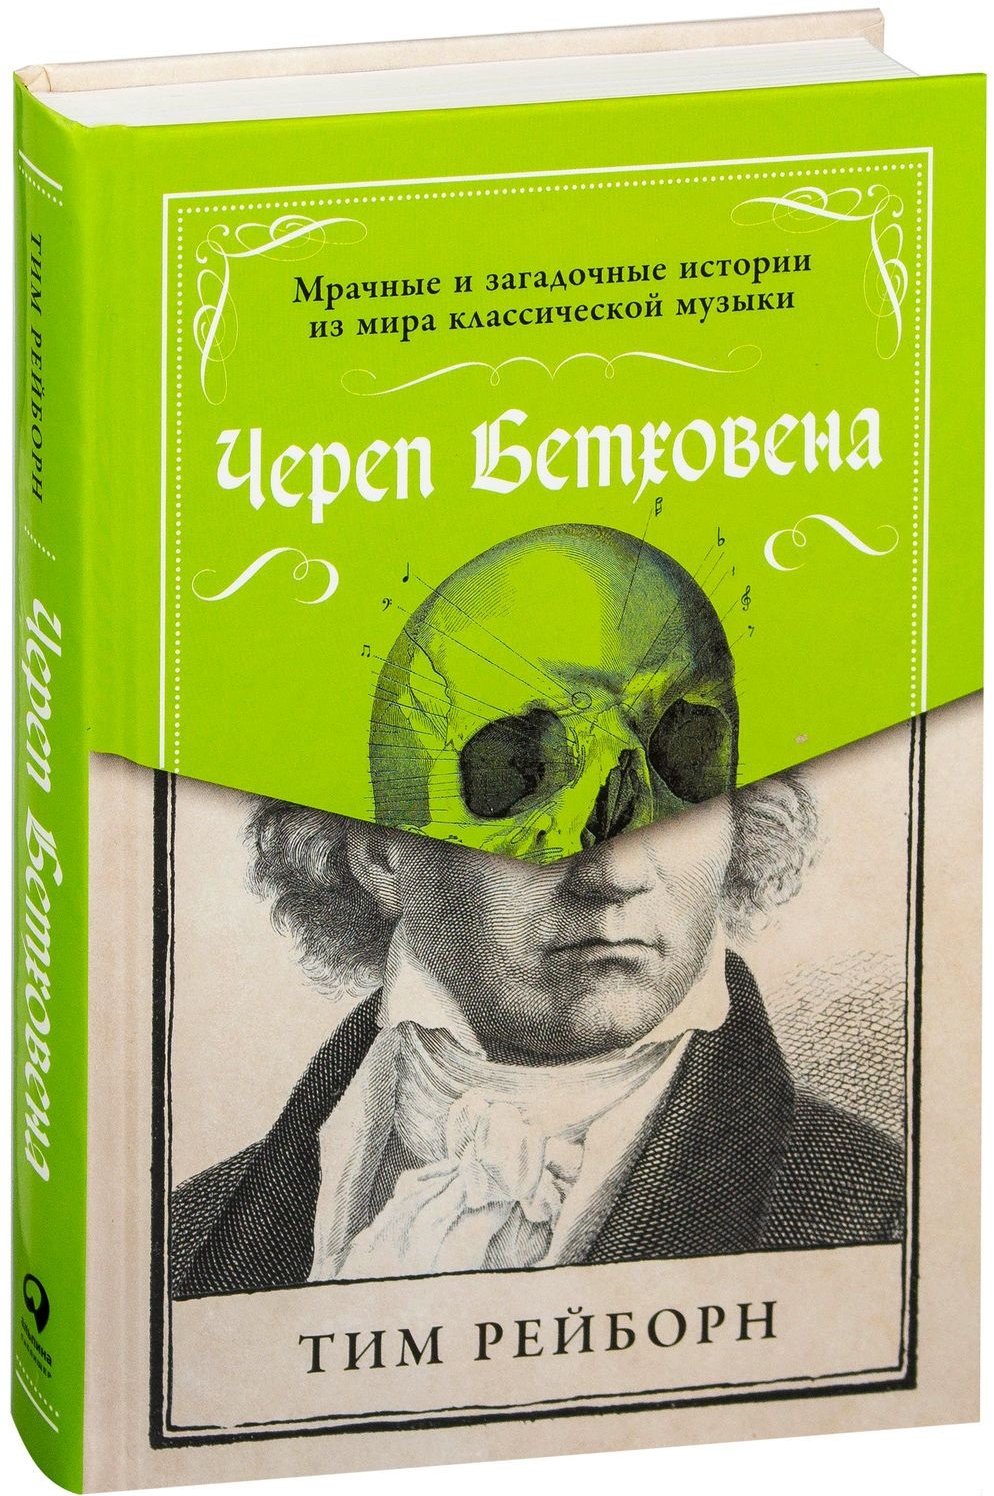 Акция на Тим Рейборн: Череп Бетховена. Мрачные и загадочные истории из мира классической музыки от Y.UA